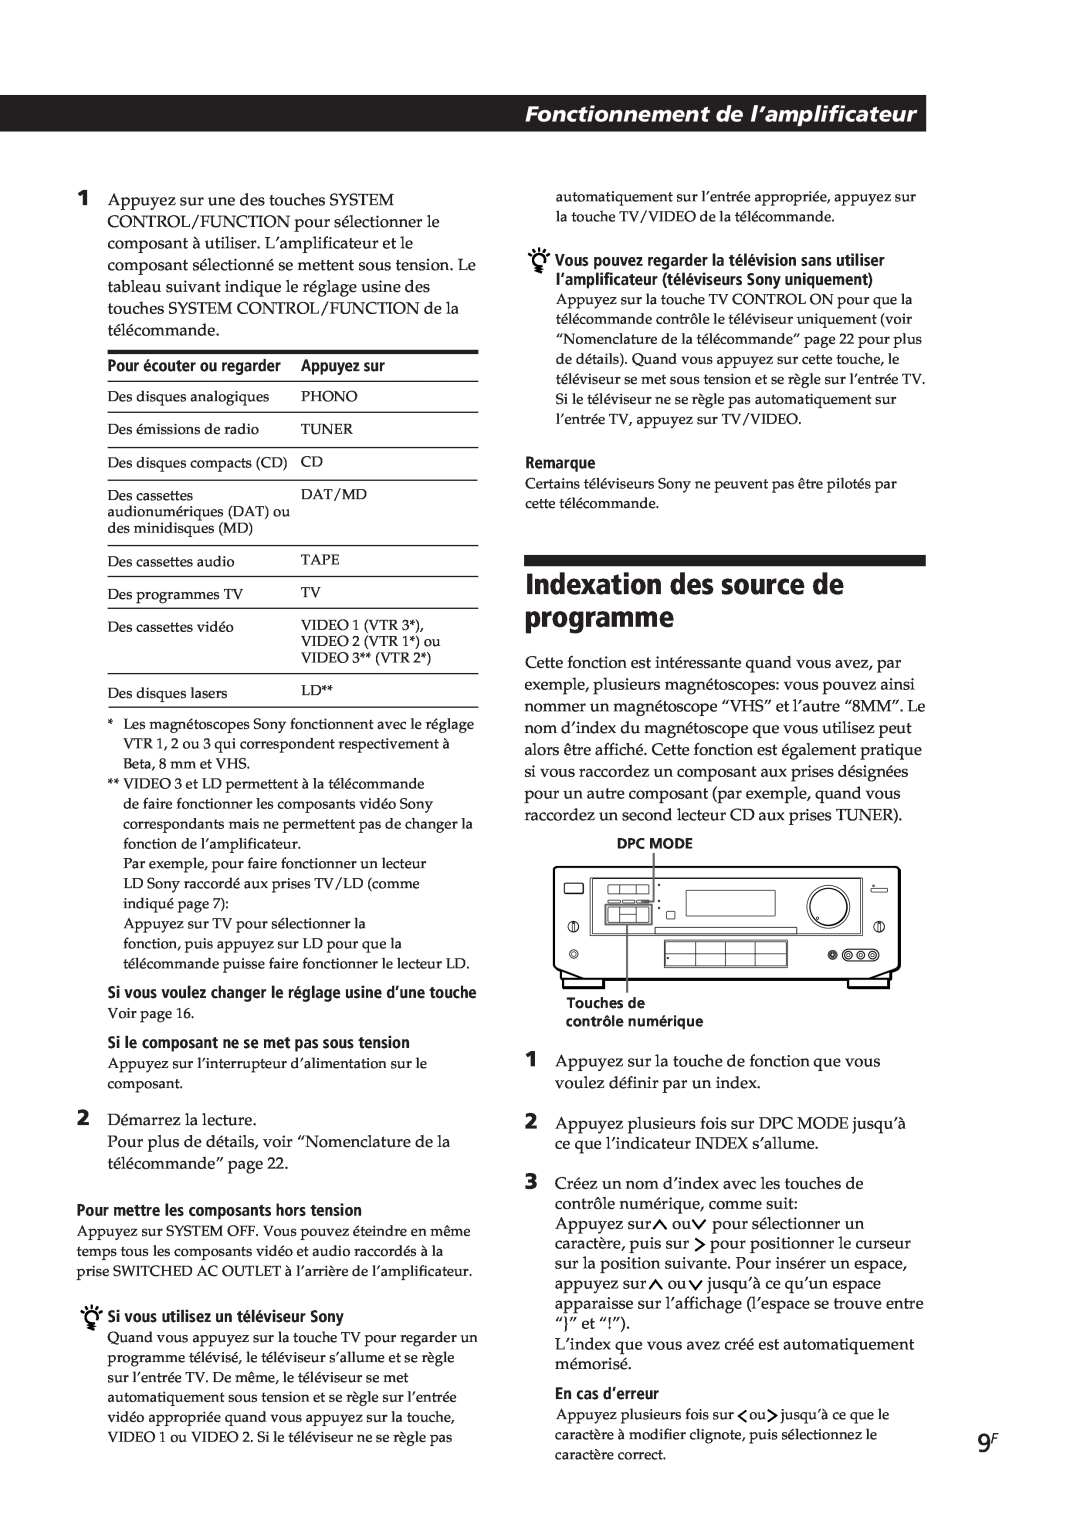 Sony TA-VE700 manual Indexation des source de programme, Fonctionnement de l’amplificateur, Appuyez sur, Remarque 